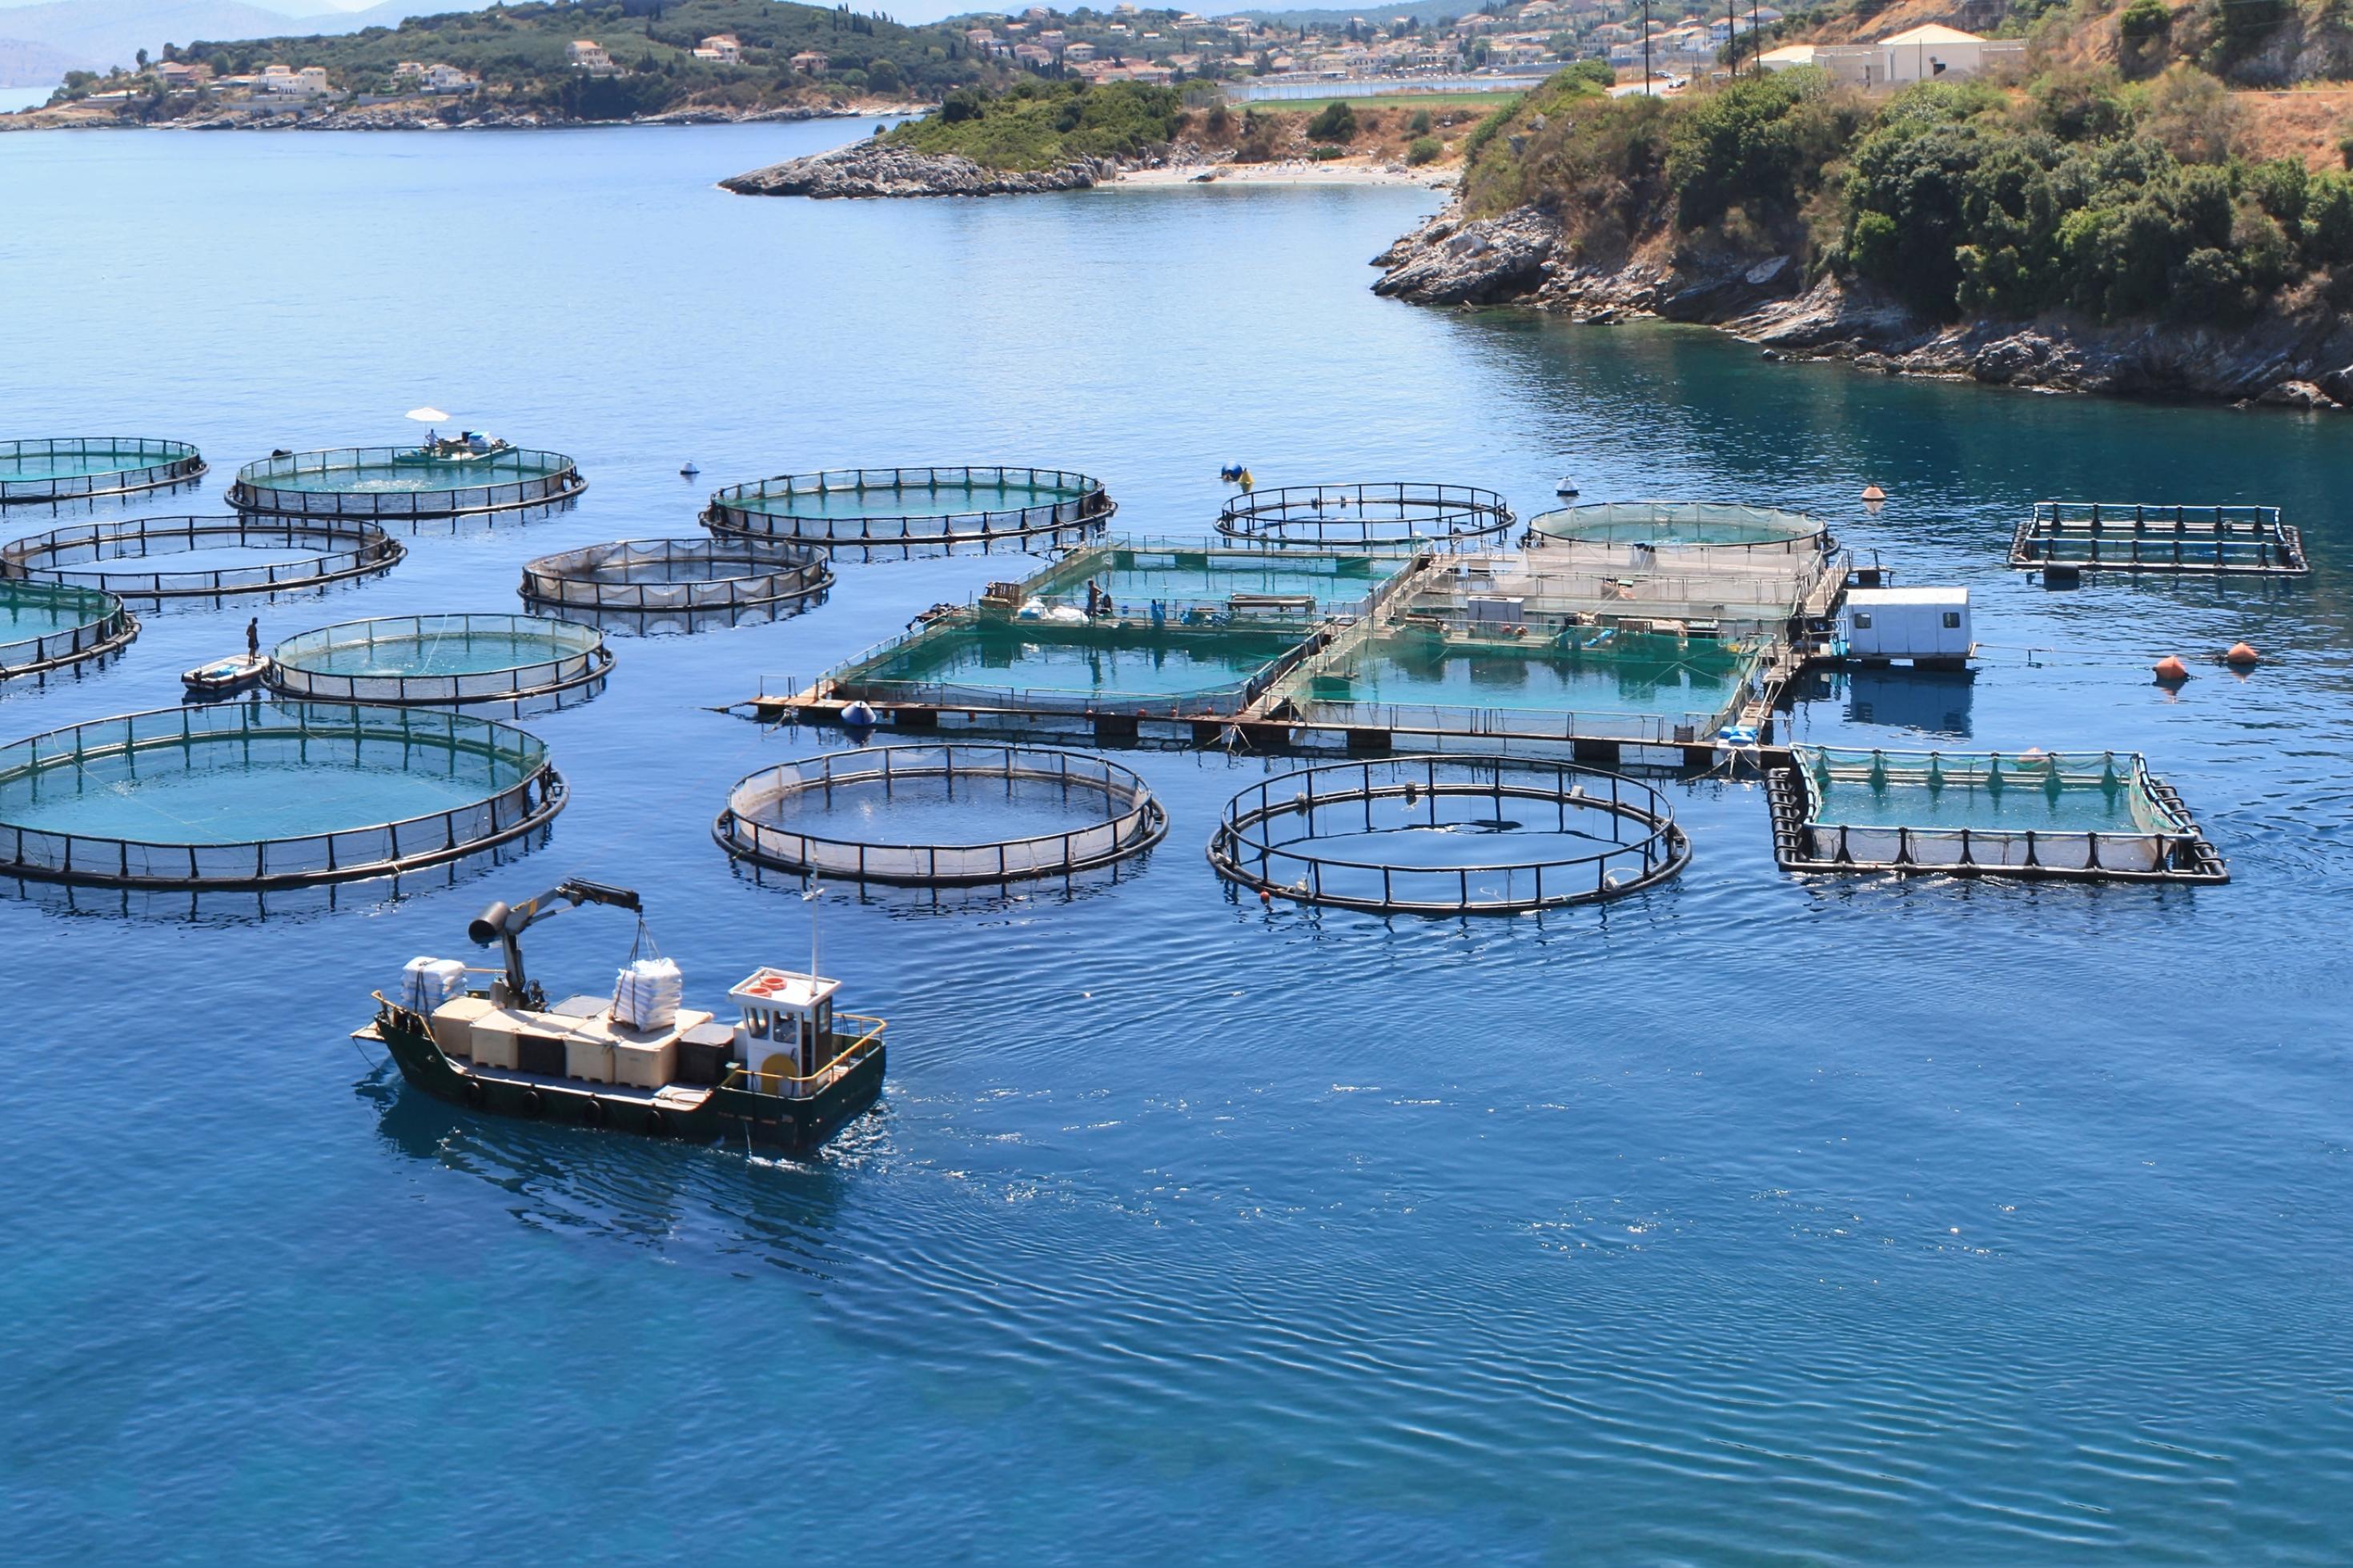 Große Fischfarmen und Aquakulturen wie diese auf dem Foto schützen zwar die wildlebenden Bestände, aber sie sorgen auch für Umweltprobleme.